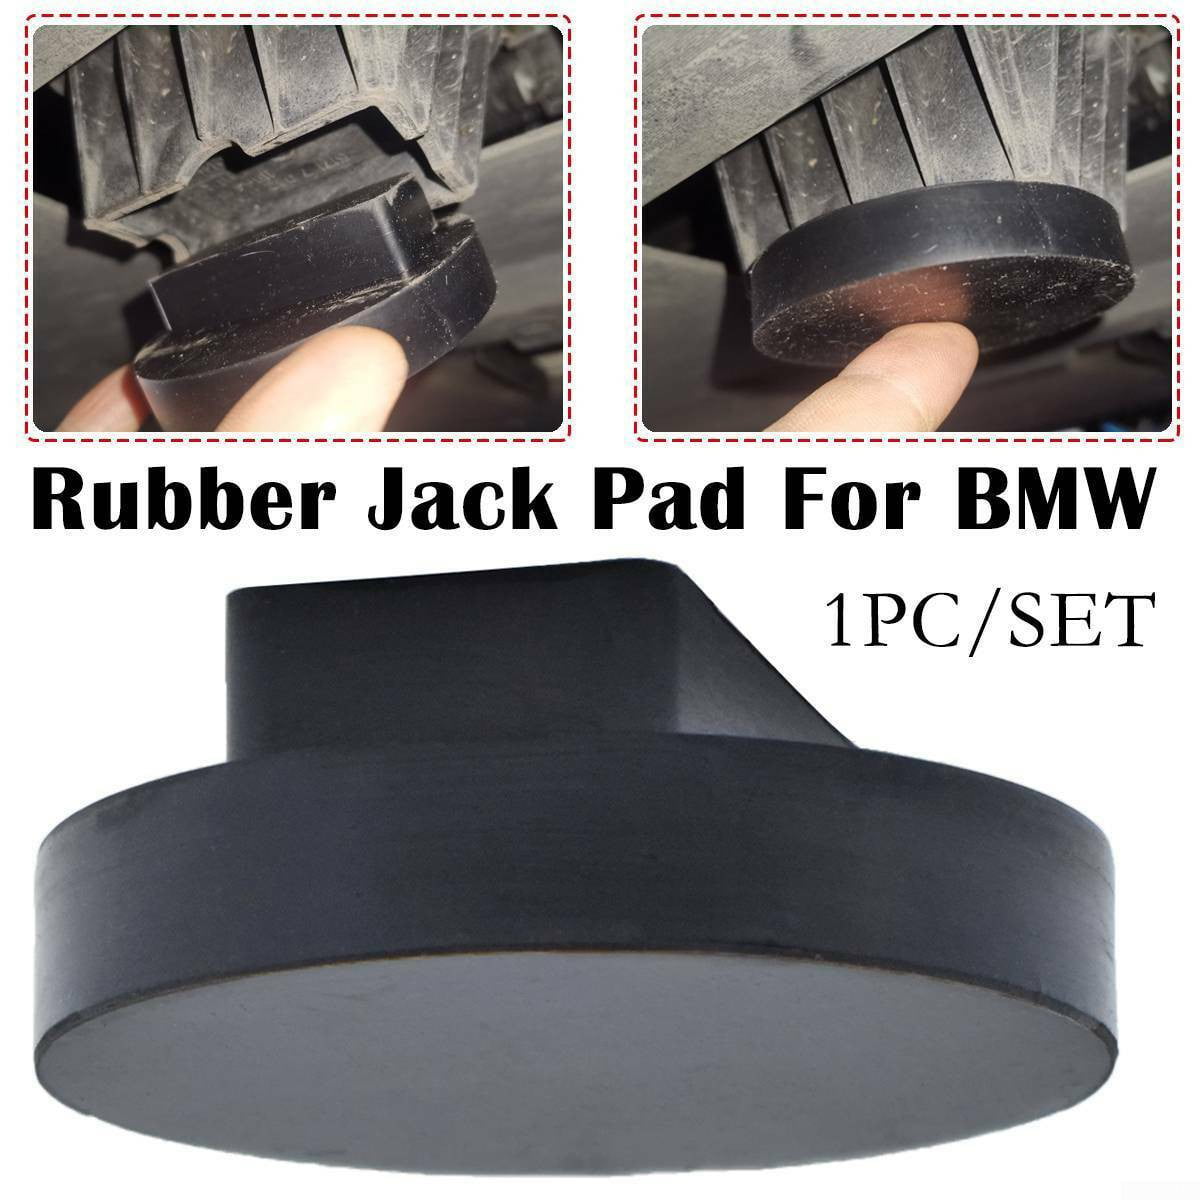 Cosmoska Jack Pad Adapter Aluminum Jack Lift Point Pad For BMW 135 335 535 E82 E88 E46 E90 E91 E92 E93 E38 E60 E61 E63 E64 E65 E66 E70 E71 E89 X5 X6 X3 1M M3 M5 M6 F01 F02 F30 F10-Black,1Pack 